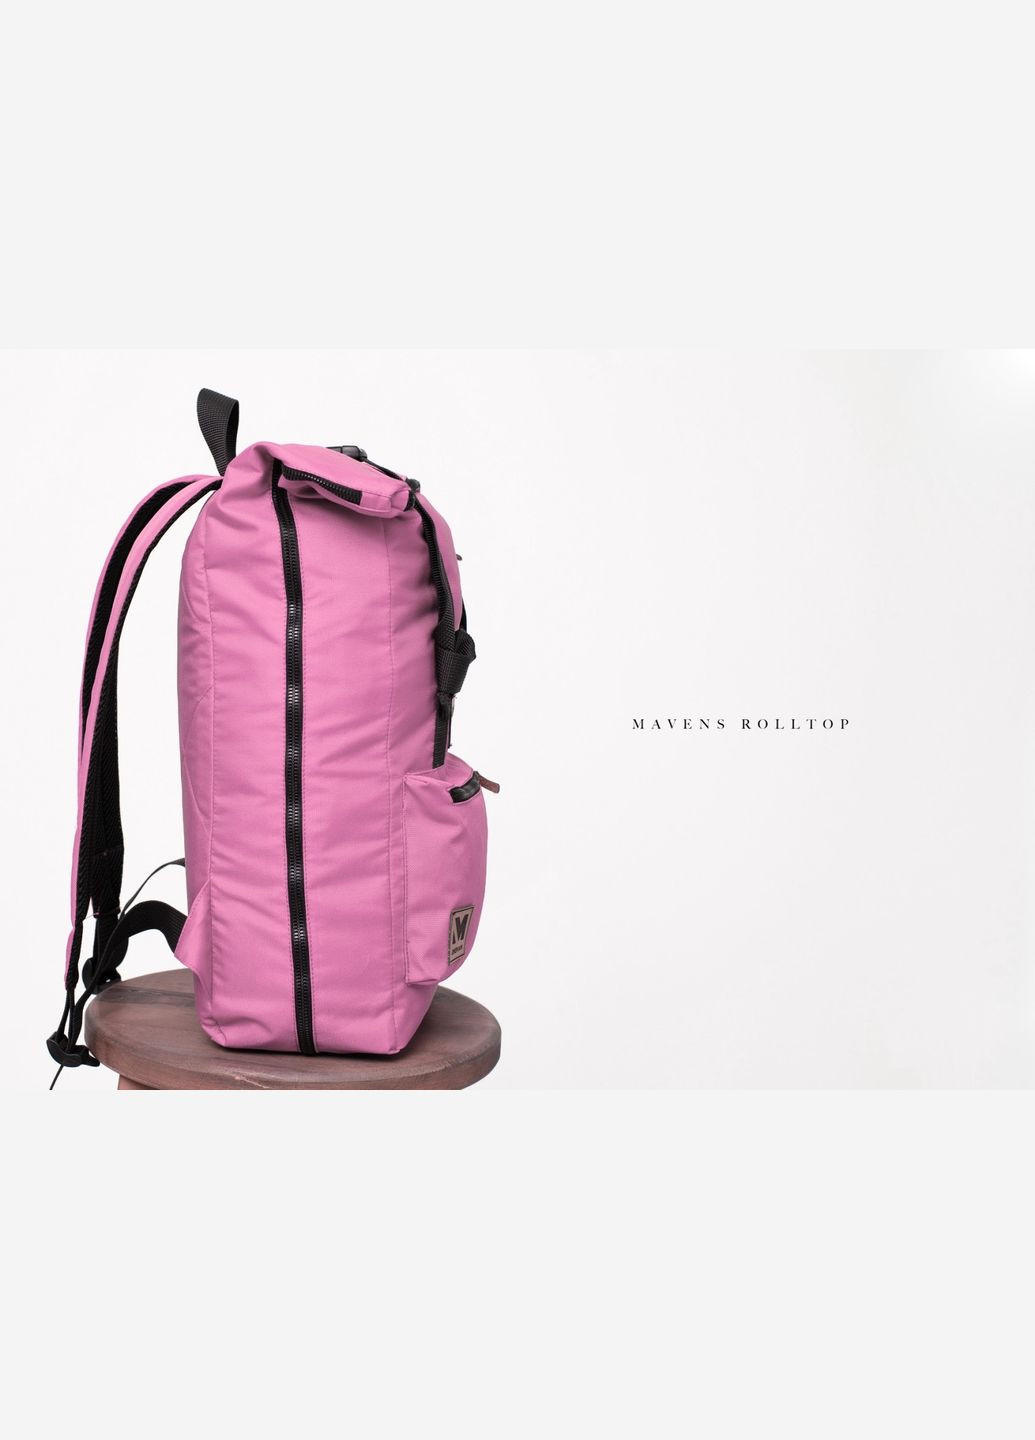 Рюкзак " Rolltop" для ручной клади, стандарт Ryanair и Wizz Air 40x20x25 см. розовый Mavens (269463469)